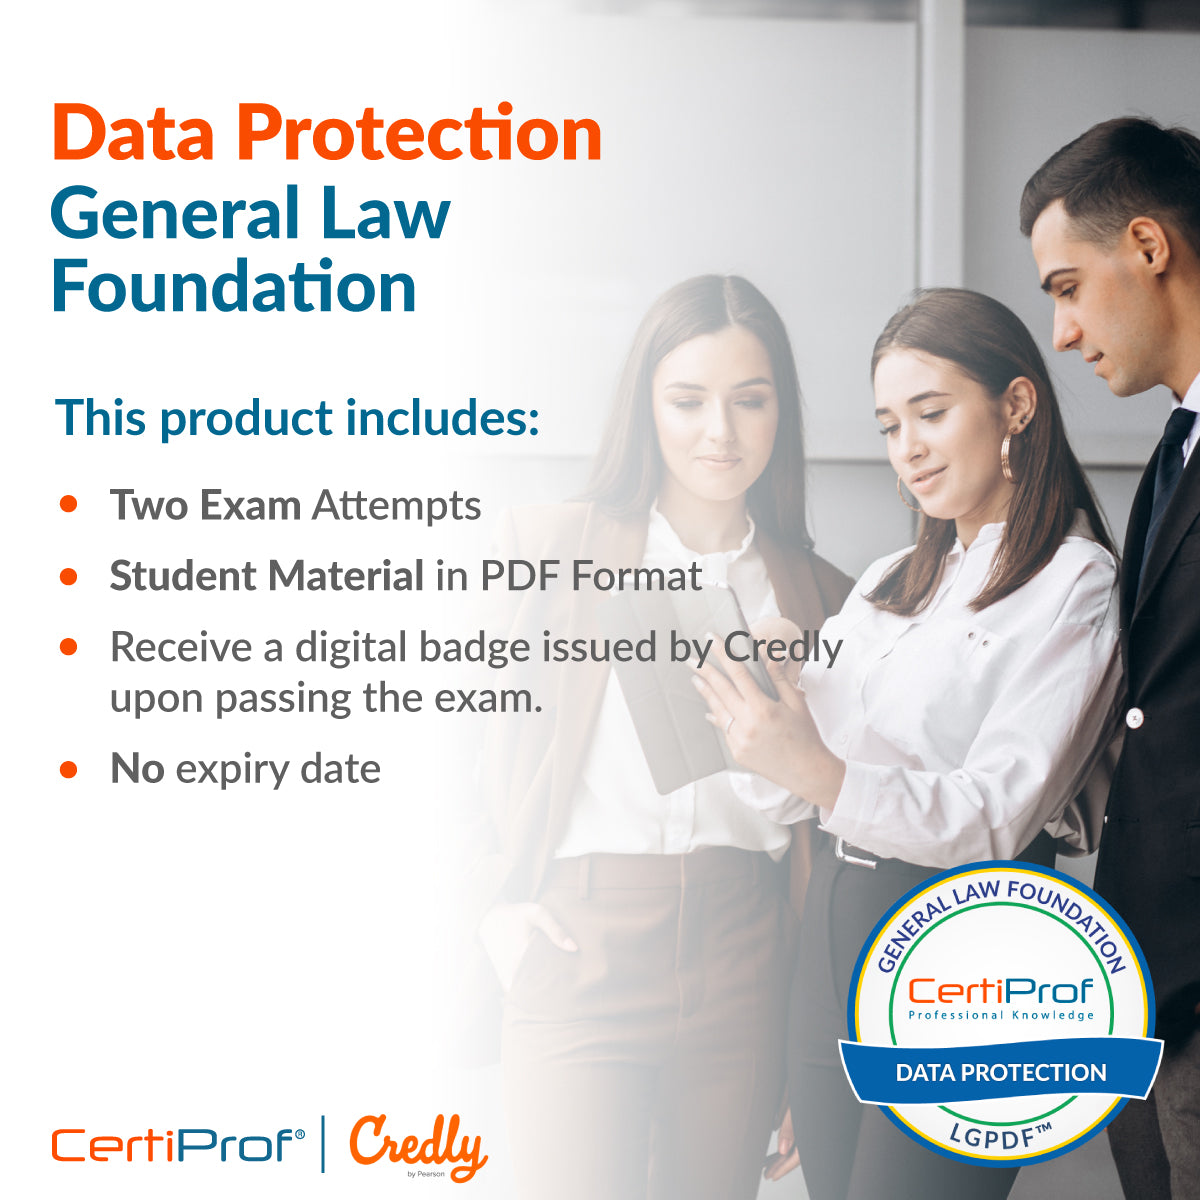 Fundación de Derecho General de Protección de Datos - LGPDF - 0